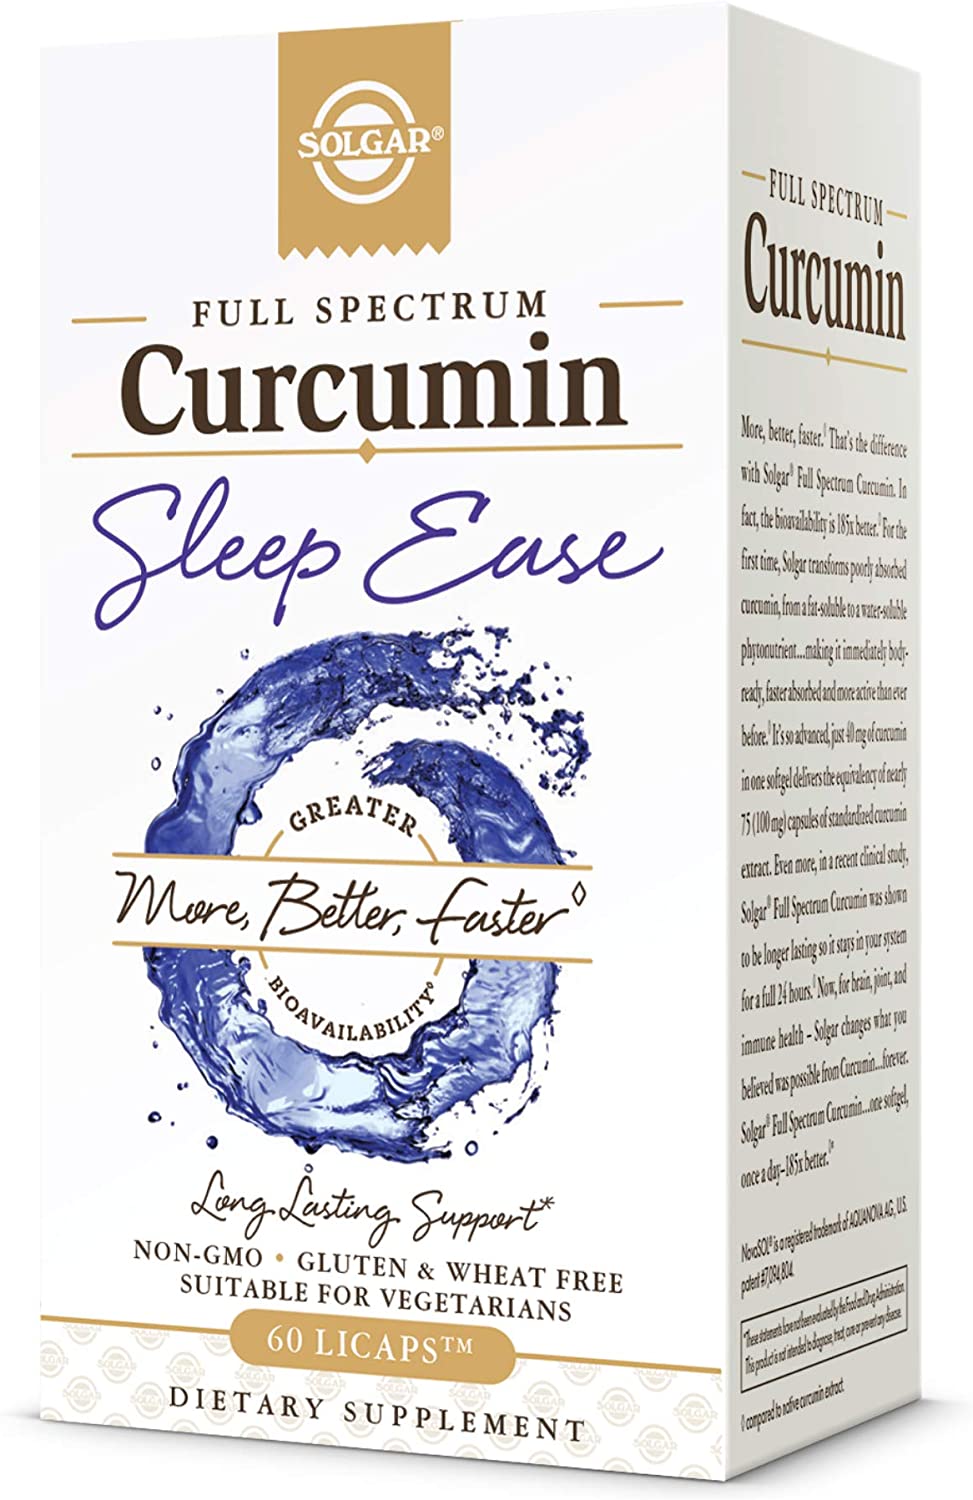 FULL SPECTRUM CERCUMIN SLEEP EASE